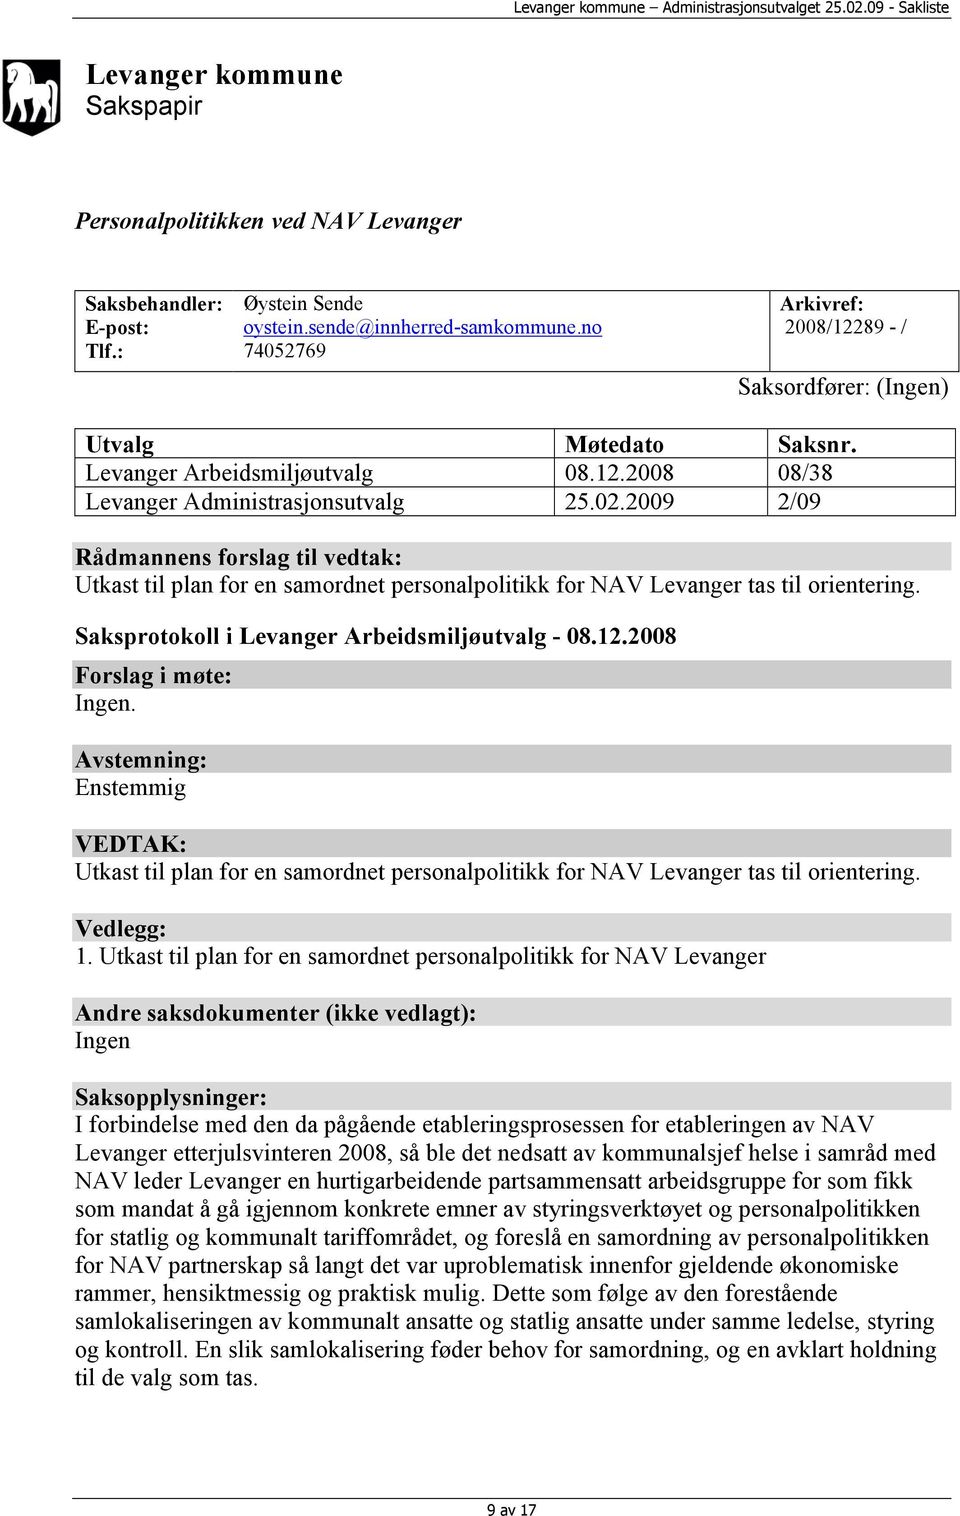 2009 2/09 Rådmannens forslag til vedtak: Utkast til plan for en samordnet personalpolitikk for NAV Levanger tas til orientering. Saksprotokoll i Levanger Arbeidsmiljøutvalg - 08.12.